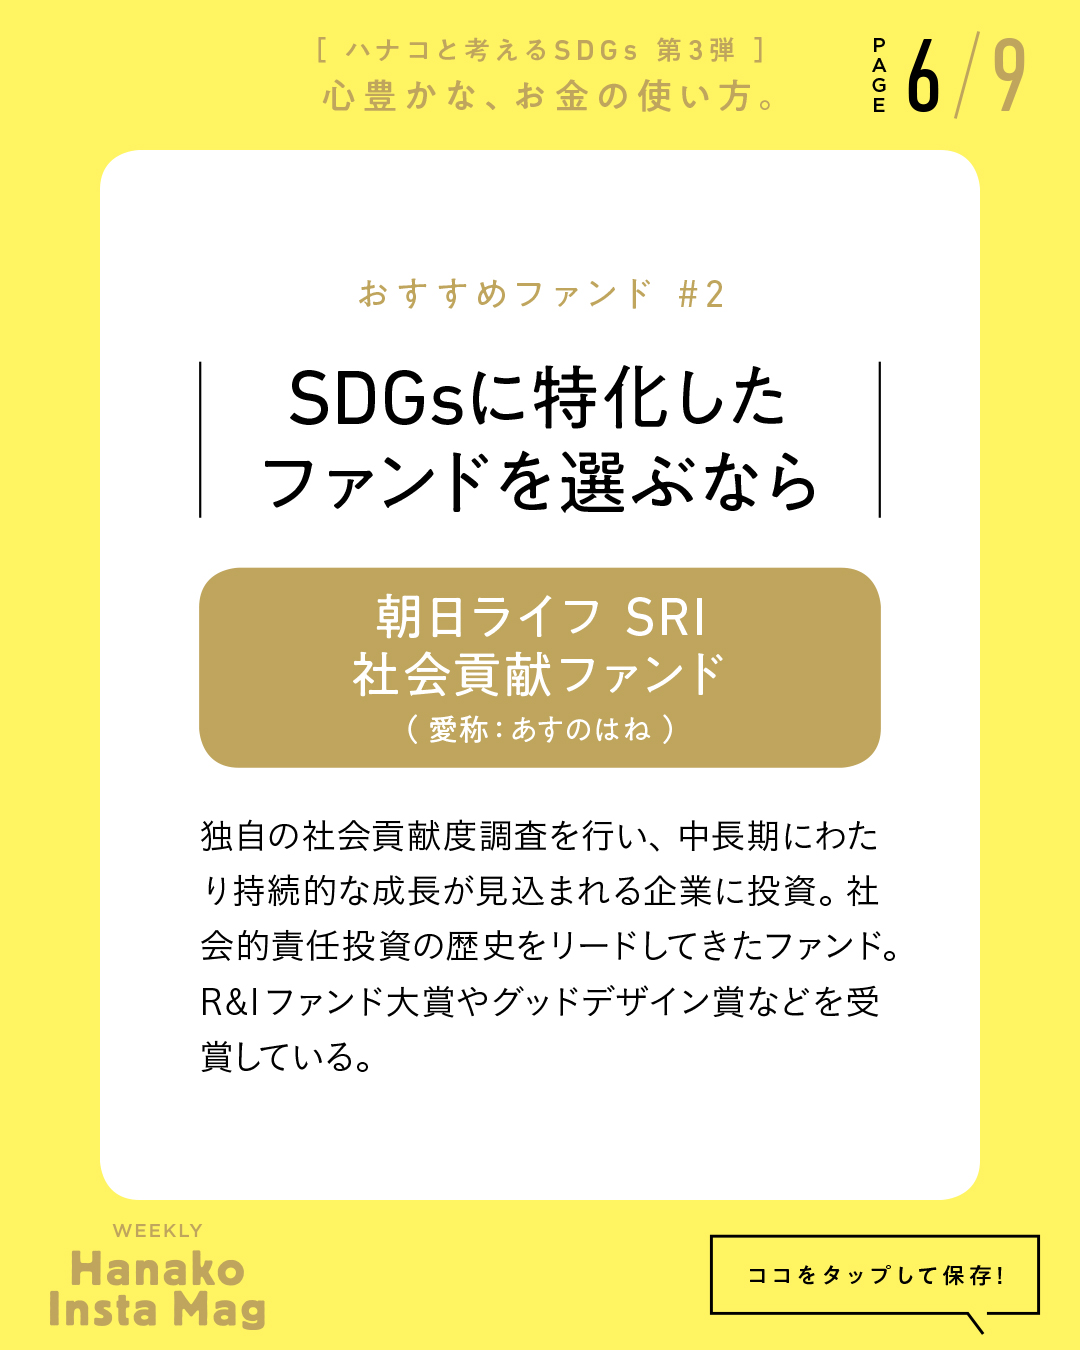 SDGs#3_sekai_action#2-6